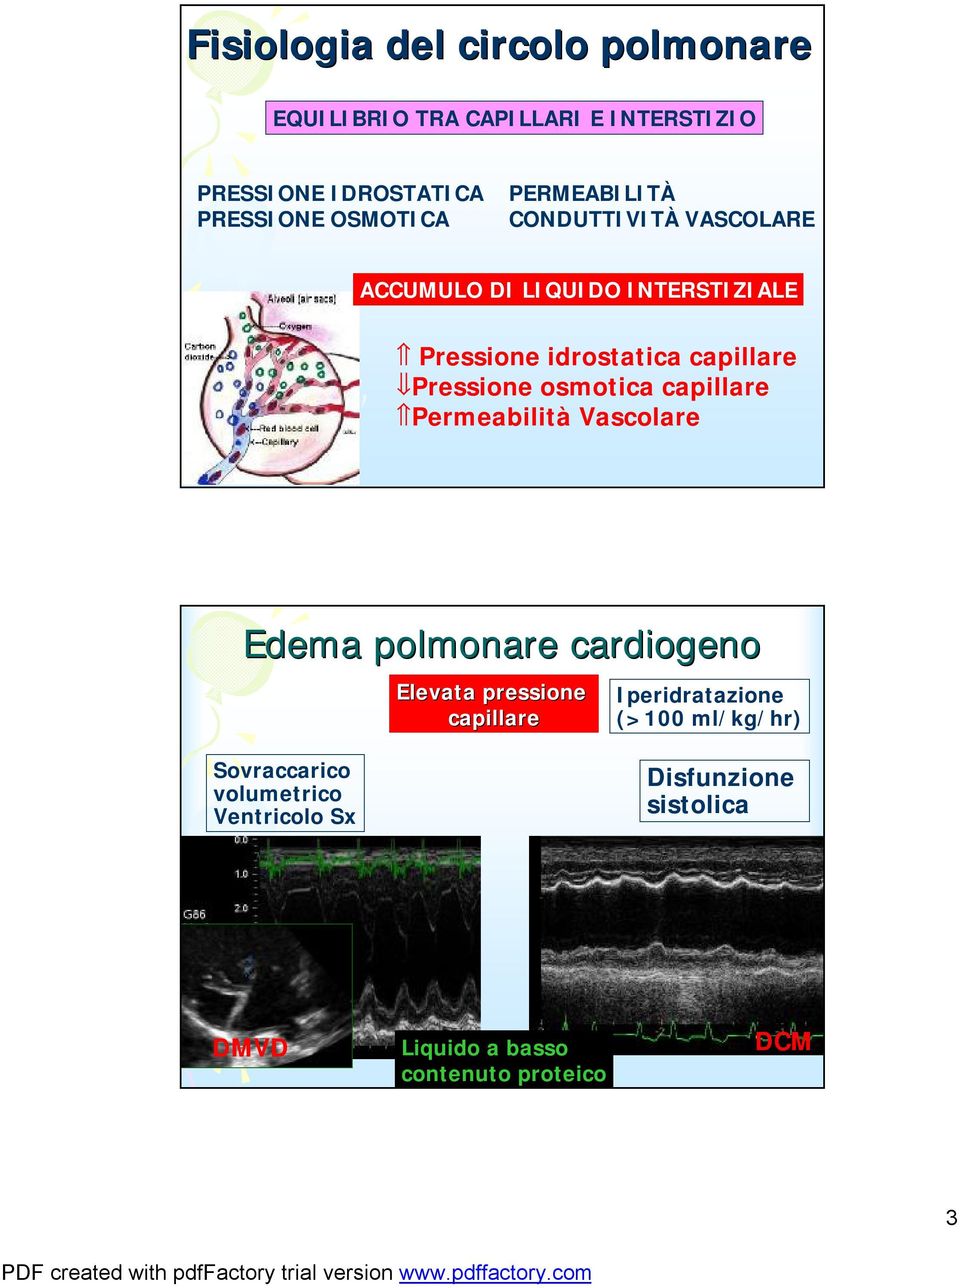 osmotica capillare Permeabilità Vascolare Edema polmonare cardiogeno Elevata pressione capillare Iperidratazione